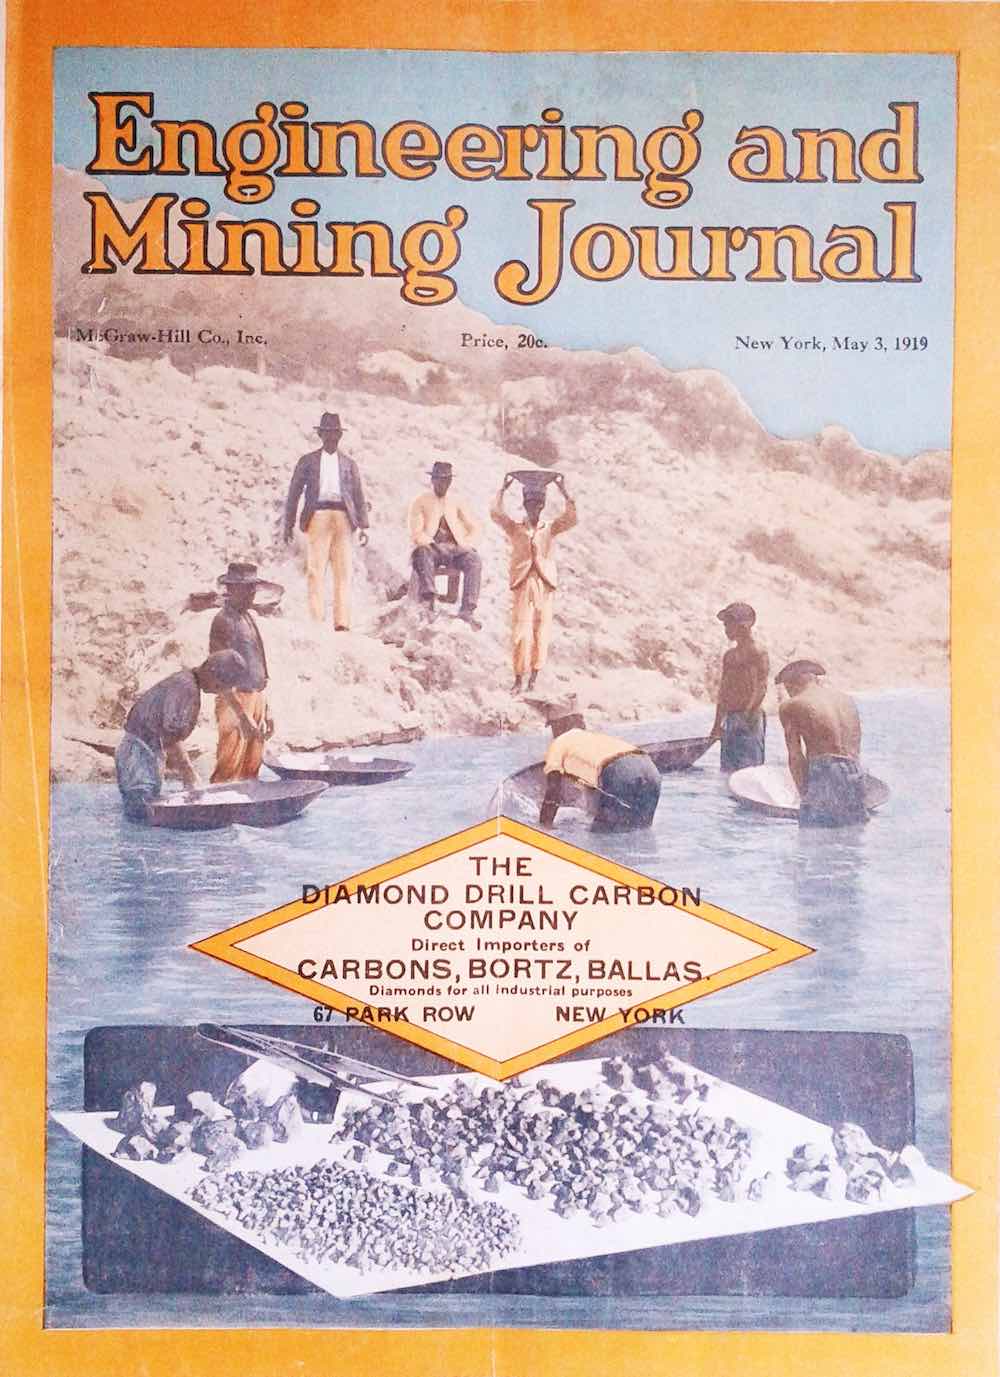 Un acervo para la consulta del Engineering and Mining Journal 1903-1995 | Por Héctor Alejandro Ruiz Sánchez*